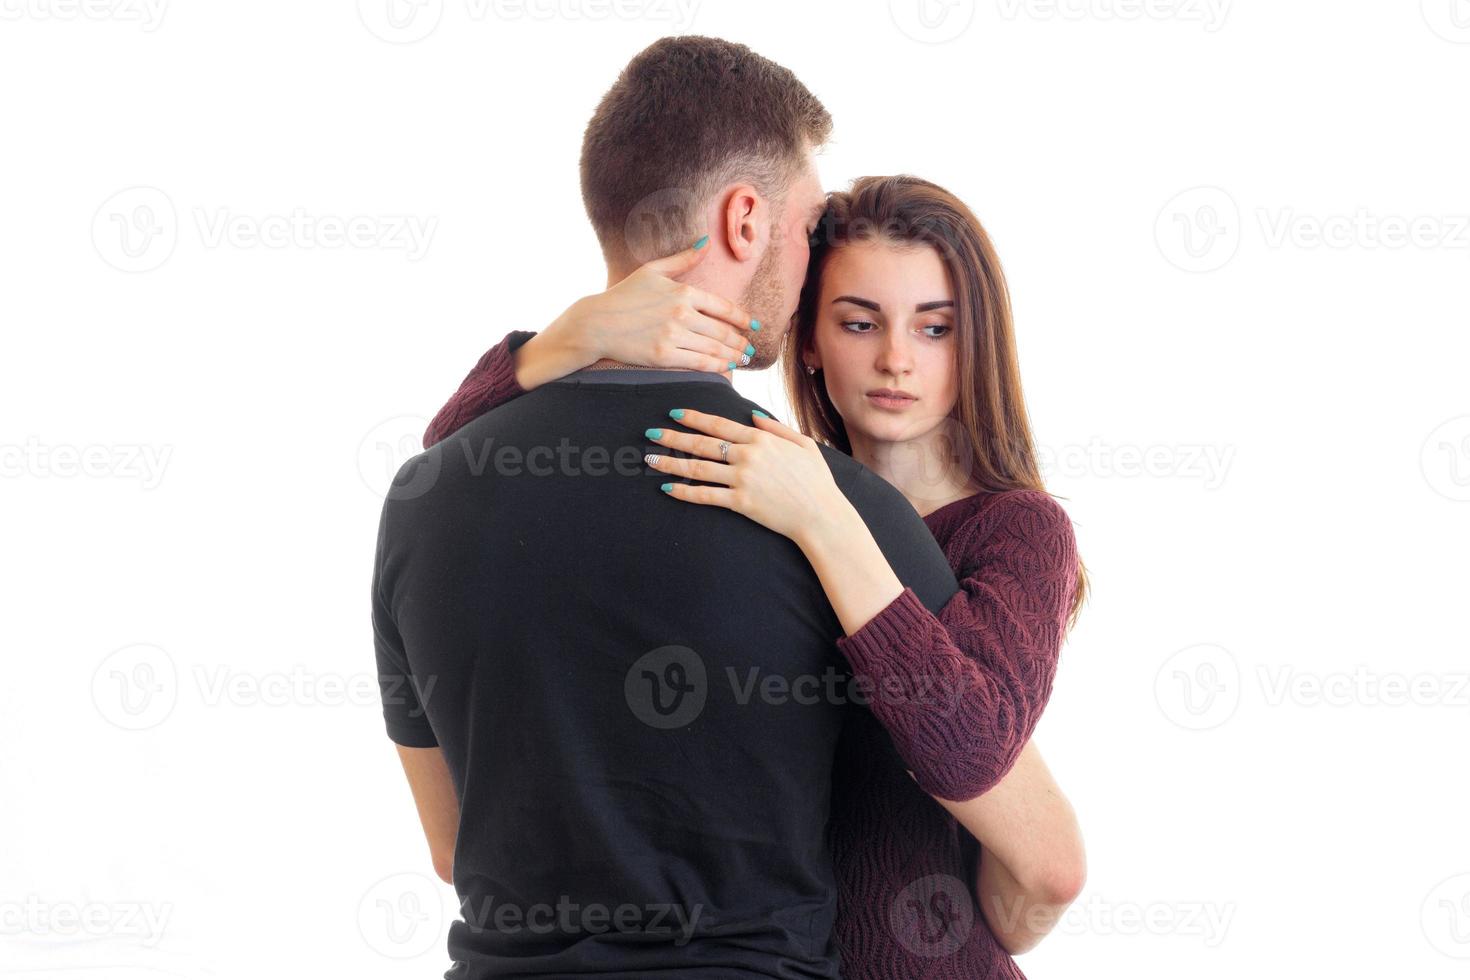 mooi attent meisje knuffels de nek van een geliefde jonger vent detailopname foto